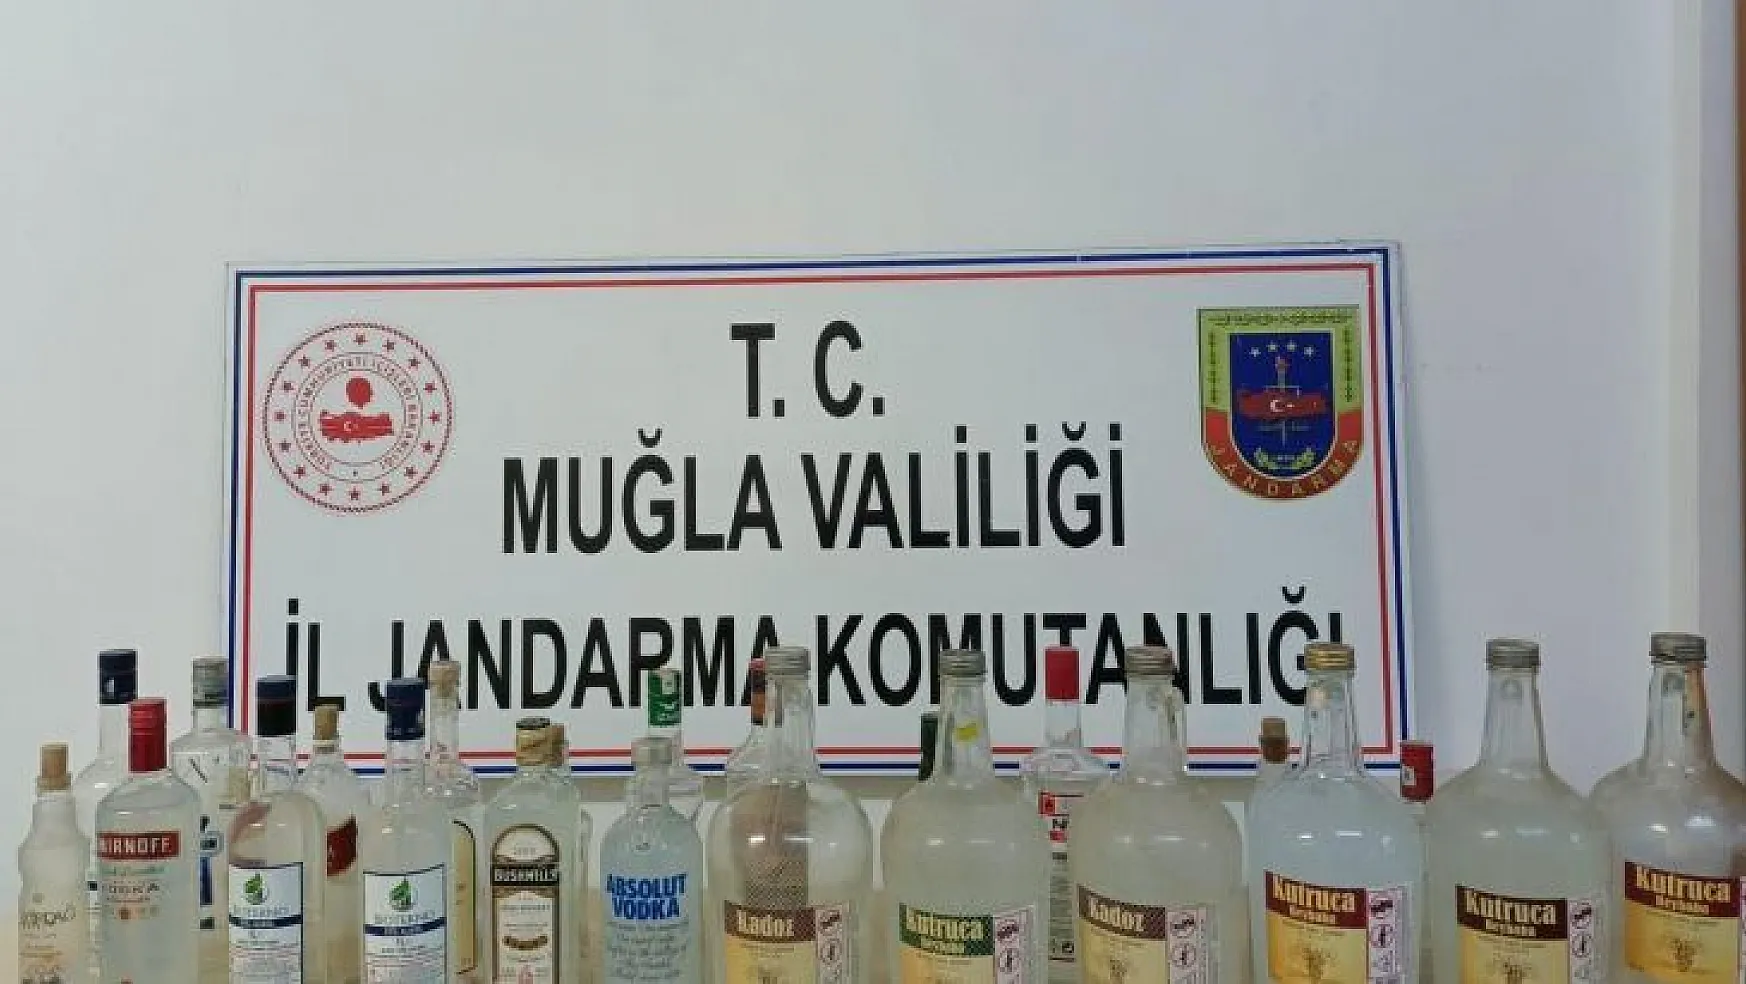 Ula Jandarma'dan kaçak içki operasyonu